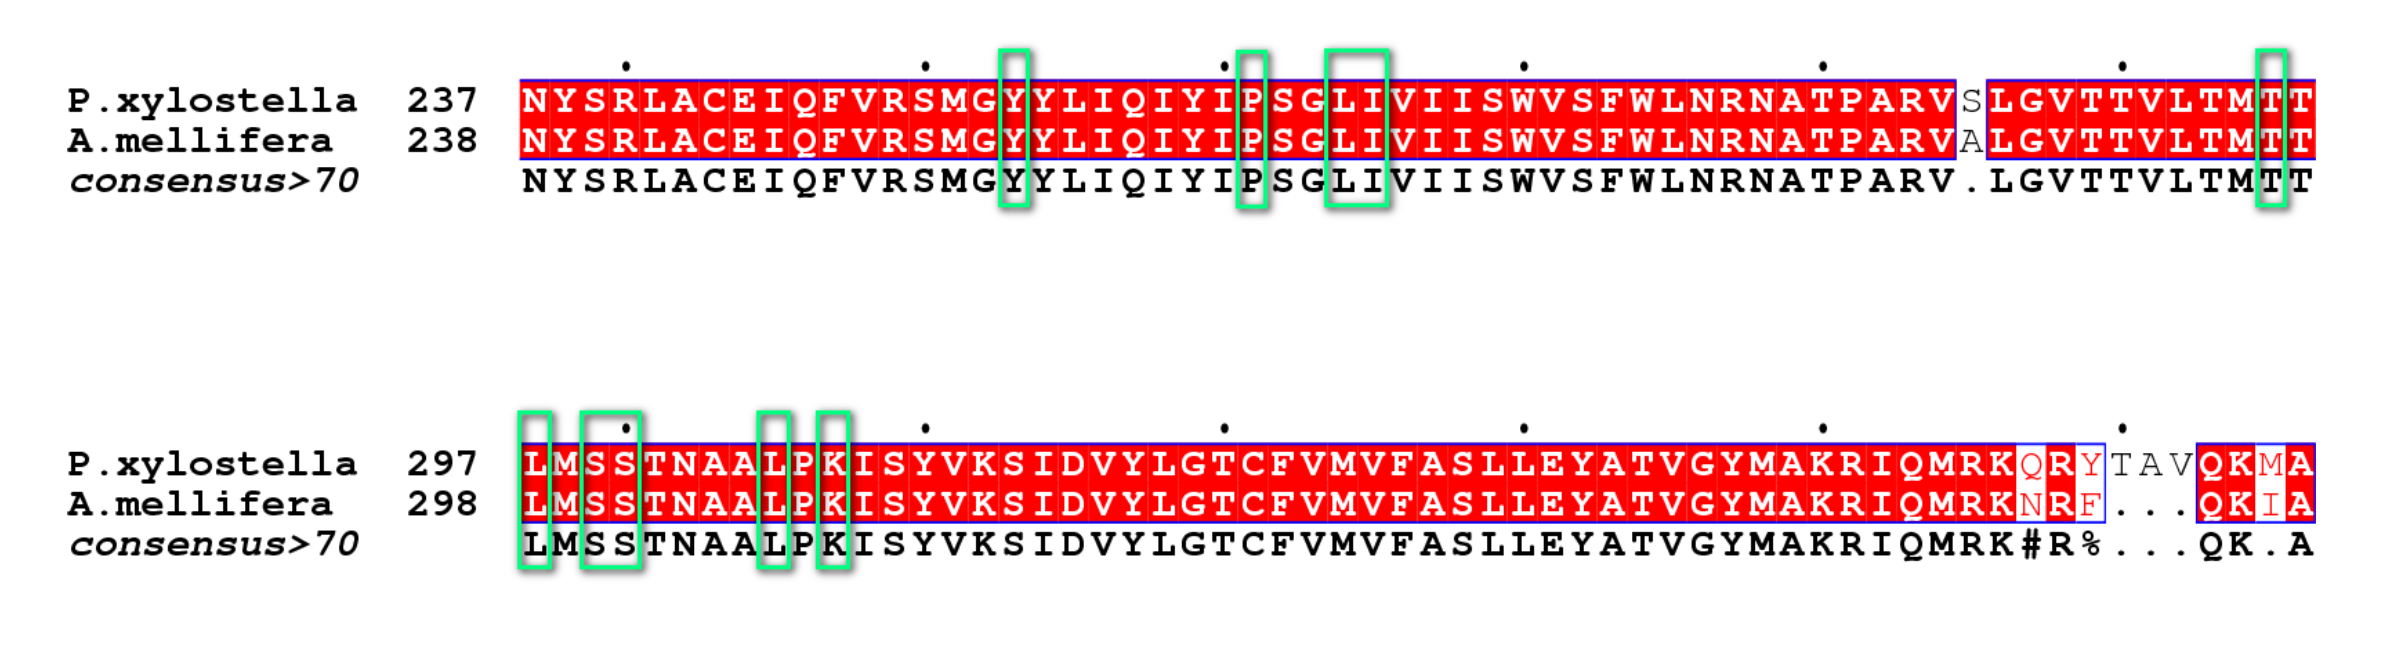 图3. P. xylostella GABAR和A. mellifera GABAR蛋白质序列的比对。红色背景上的白色字母代表相同的氨基酸，白色背景上的红色字母代表相似的氨基酸，绿色方框中的氨基酸代表与结合口袋中的氟噁唑酰胺对映体相互作用的残基。